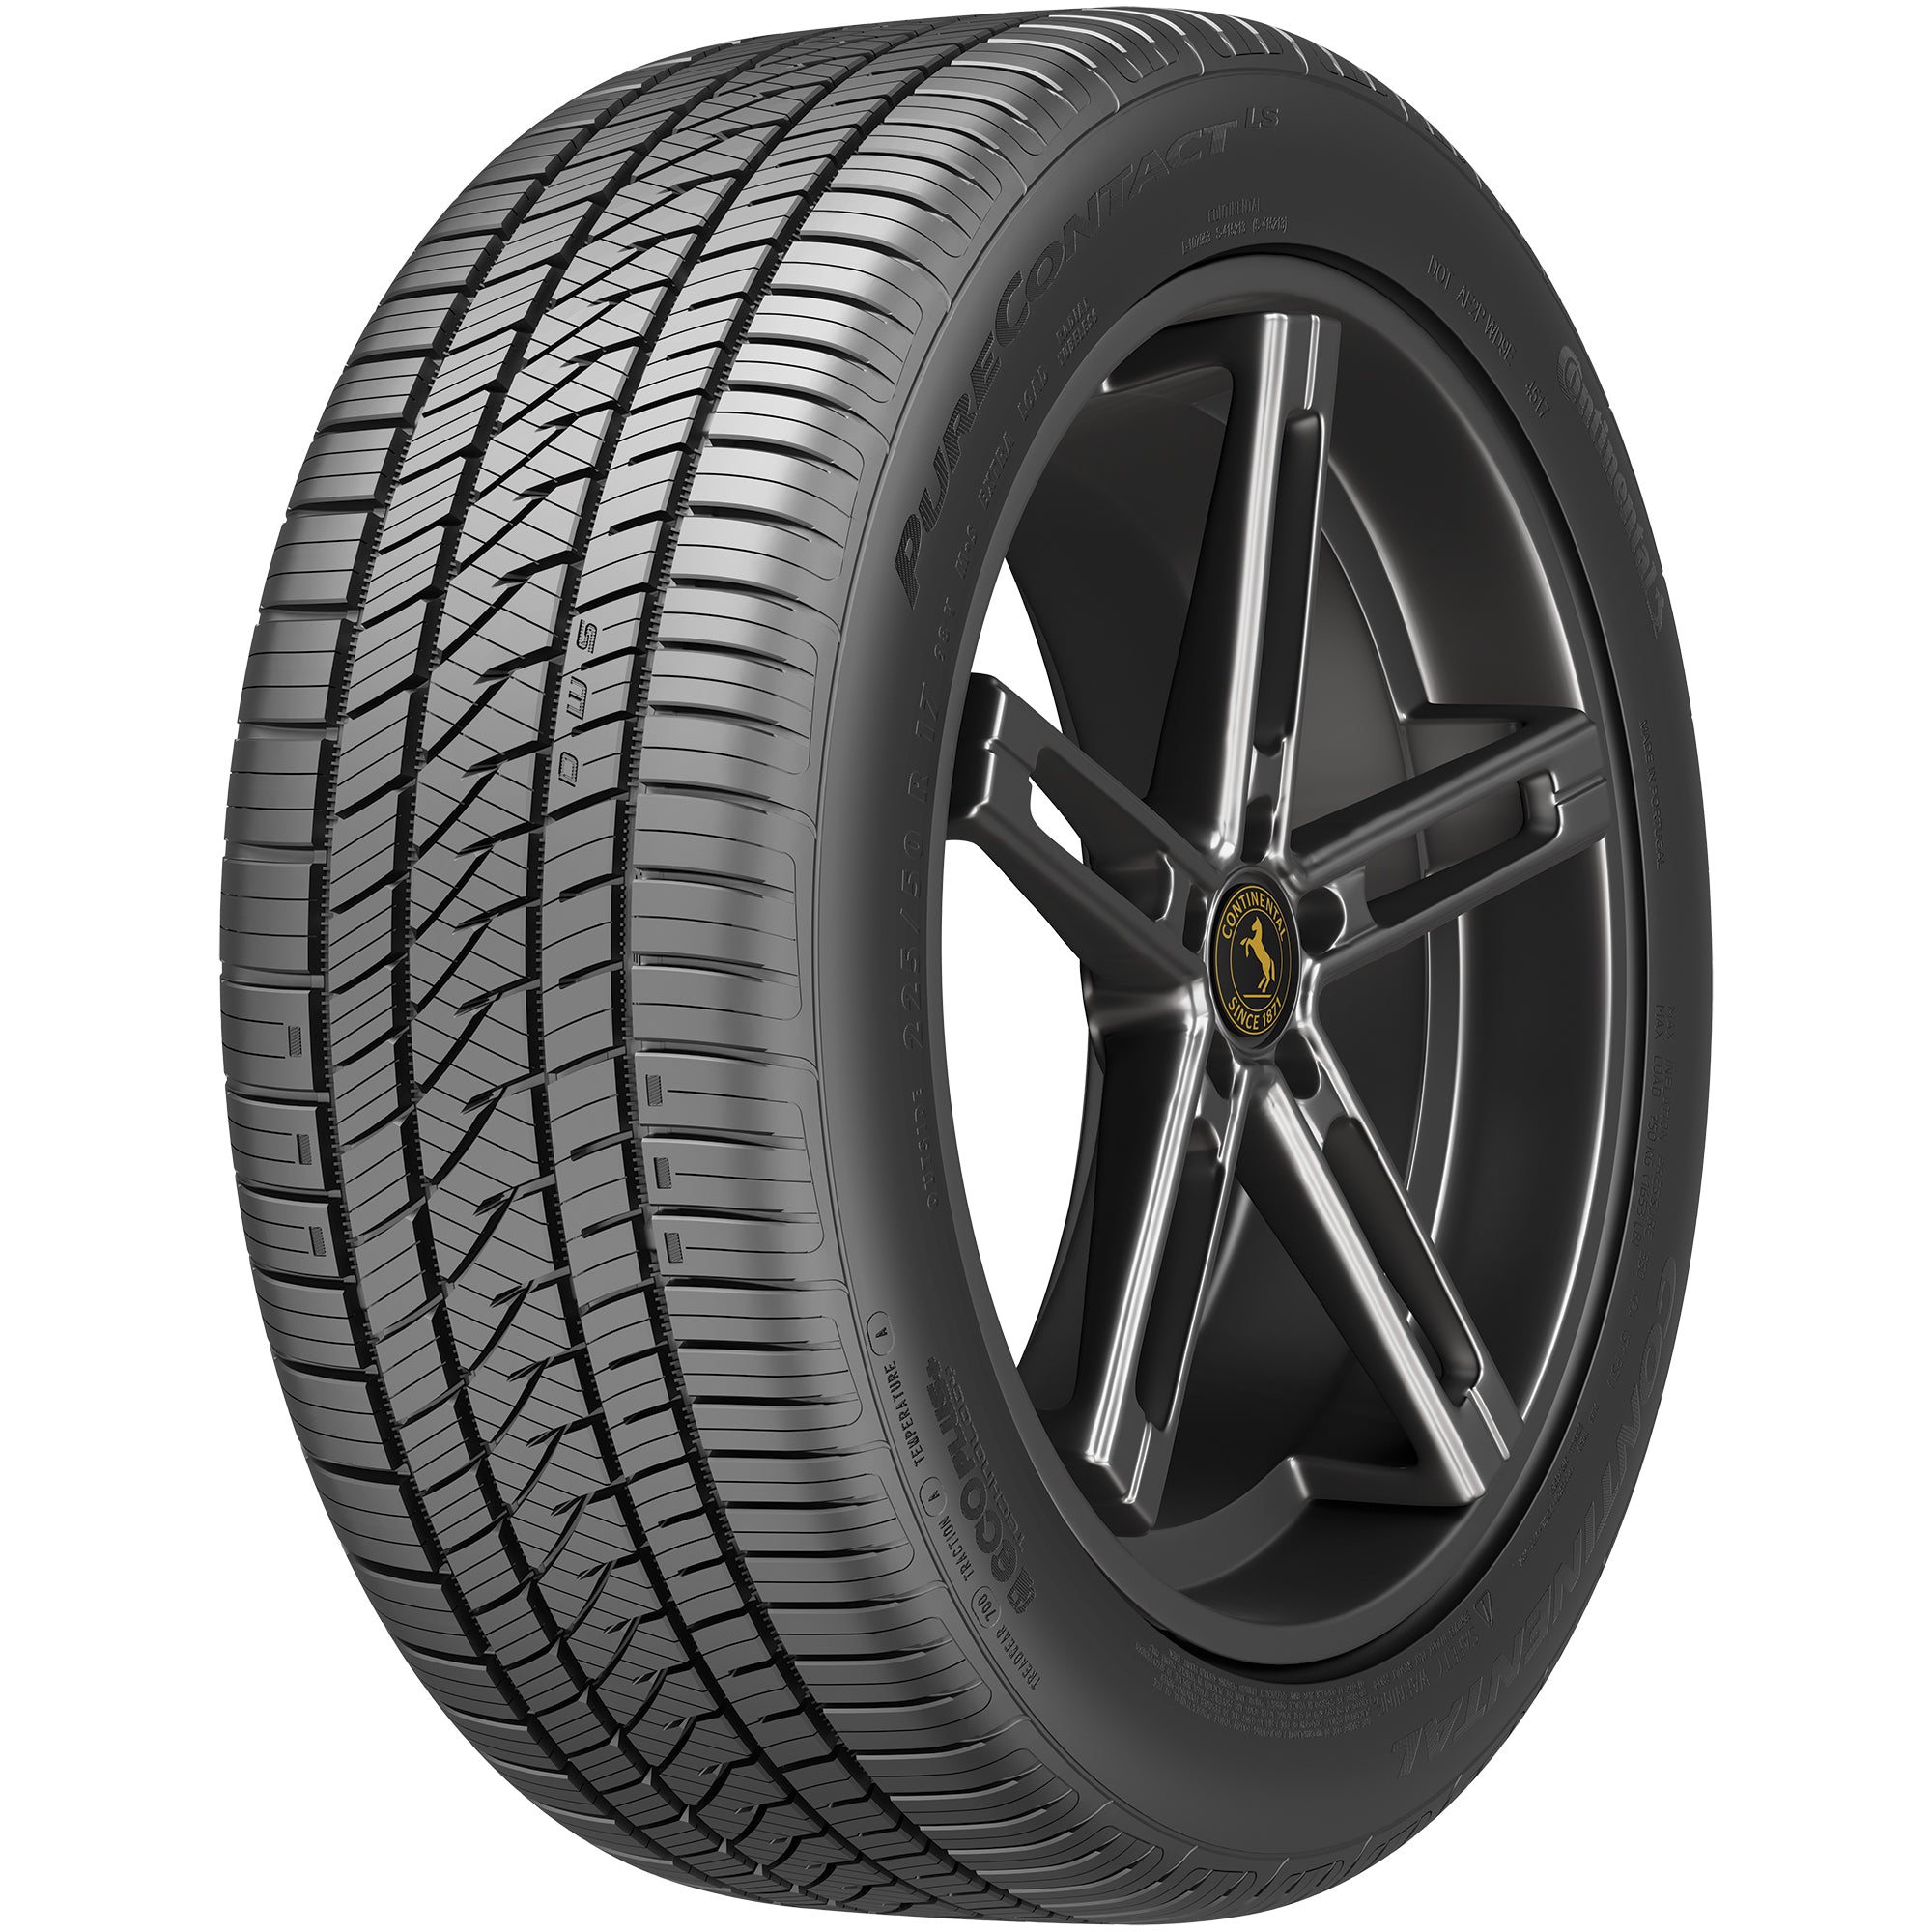 CONTINENTAL PURECONTACT LS 205/50R17XL (25.1X8.1R 17) Tires